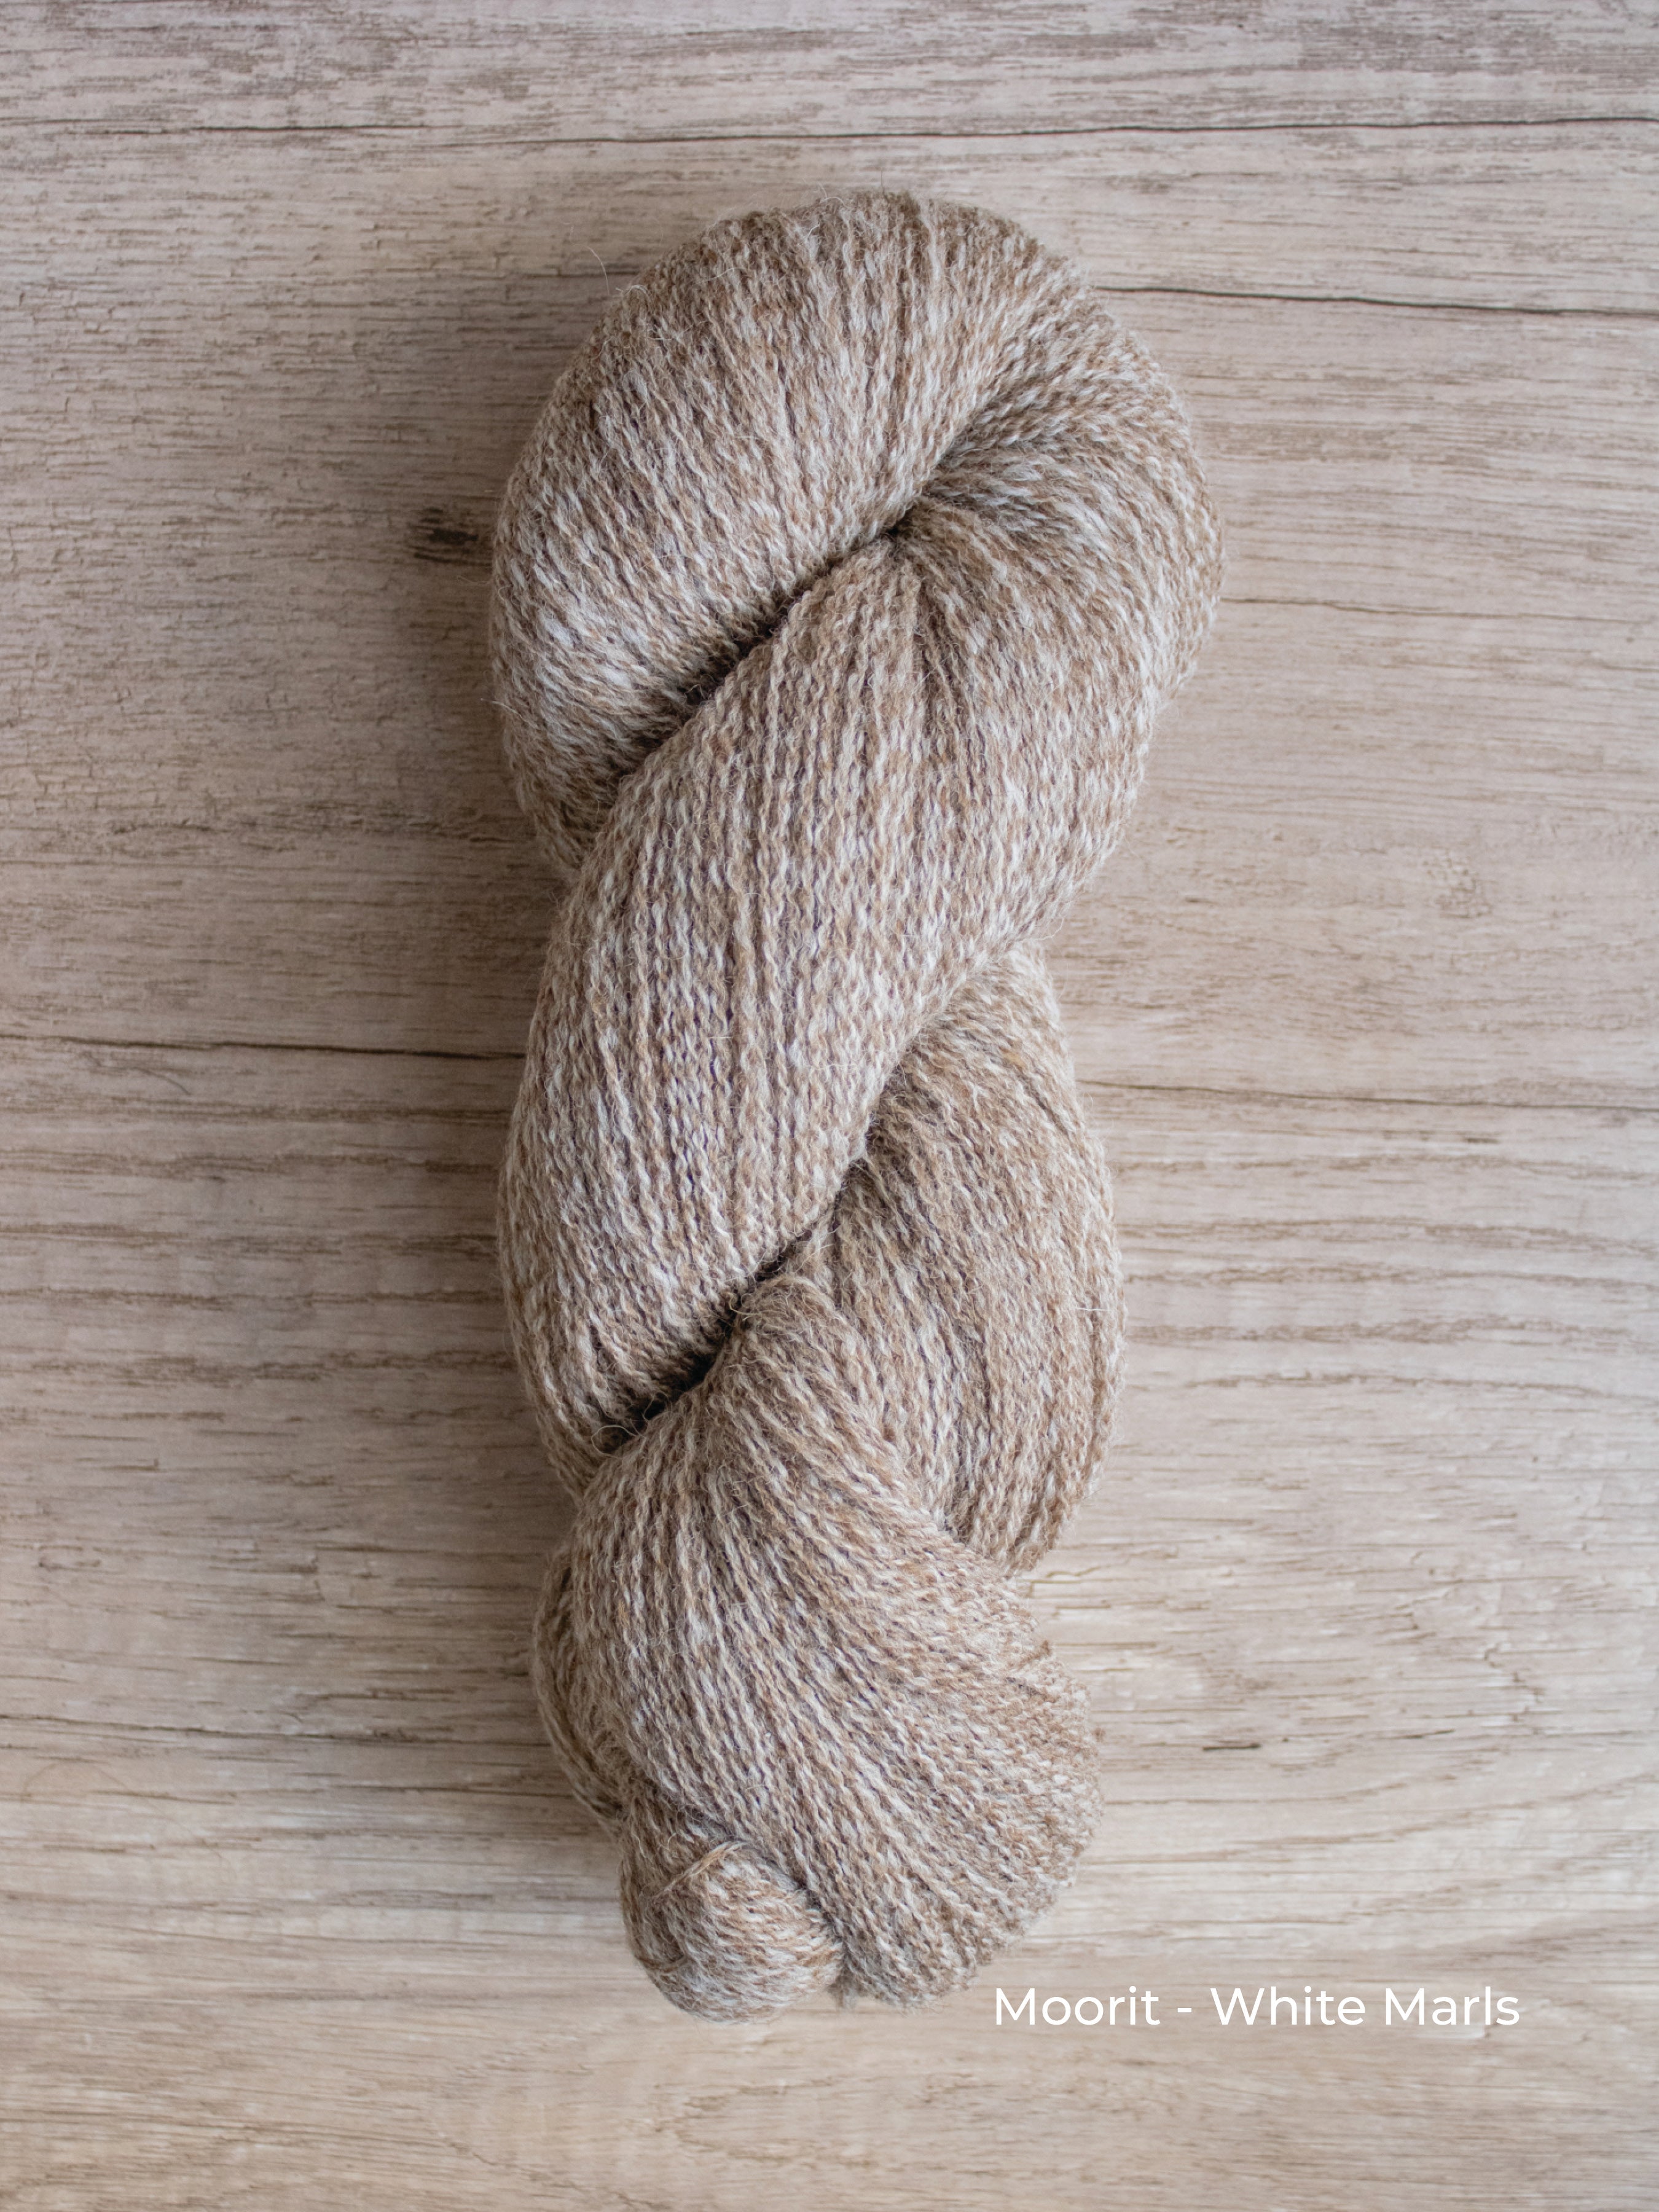 Shetlandia Sport <br><small>100% british shetland wool</small>